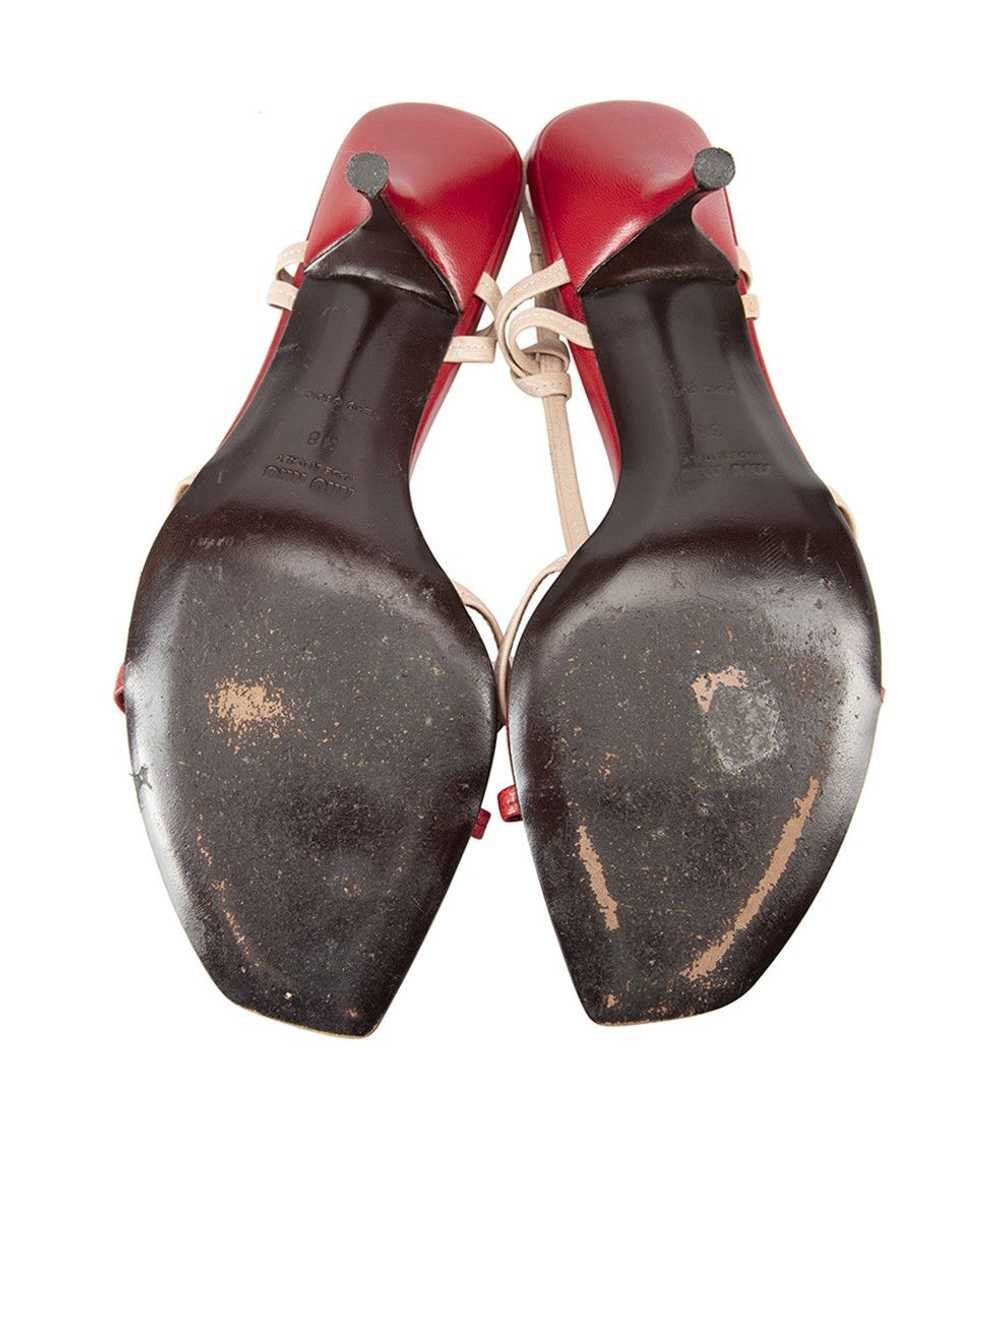 Miu Miu Vintage Nude Leather Bow Heeled Sandals - image 4